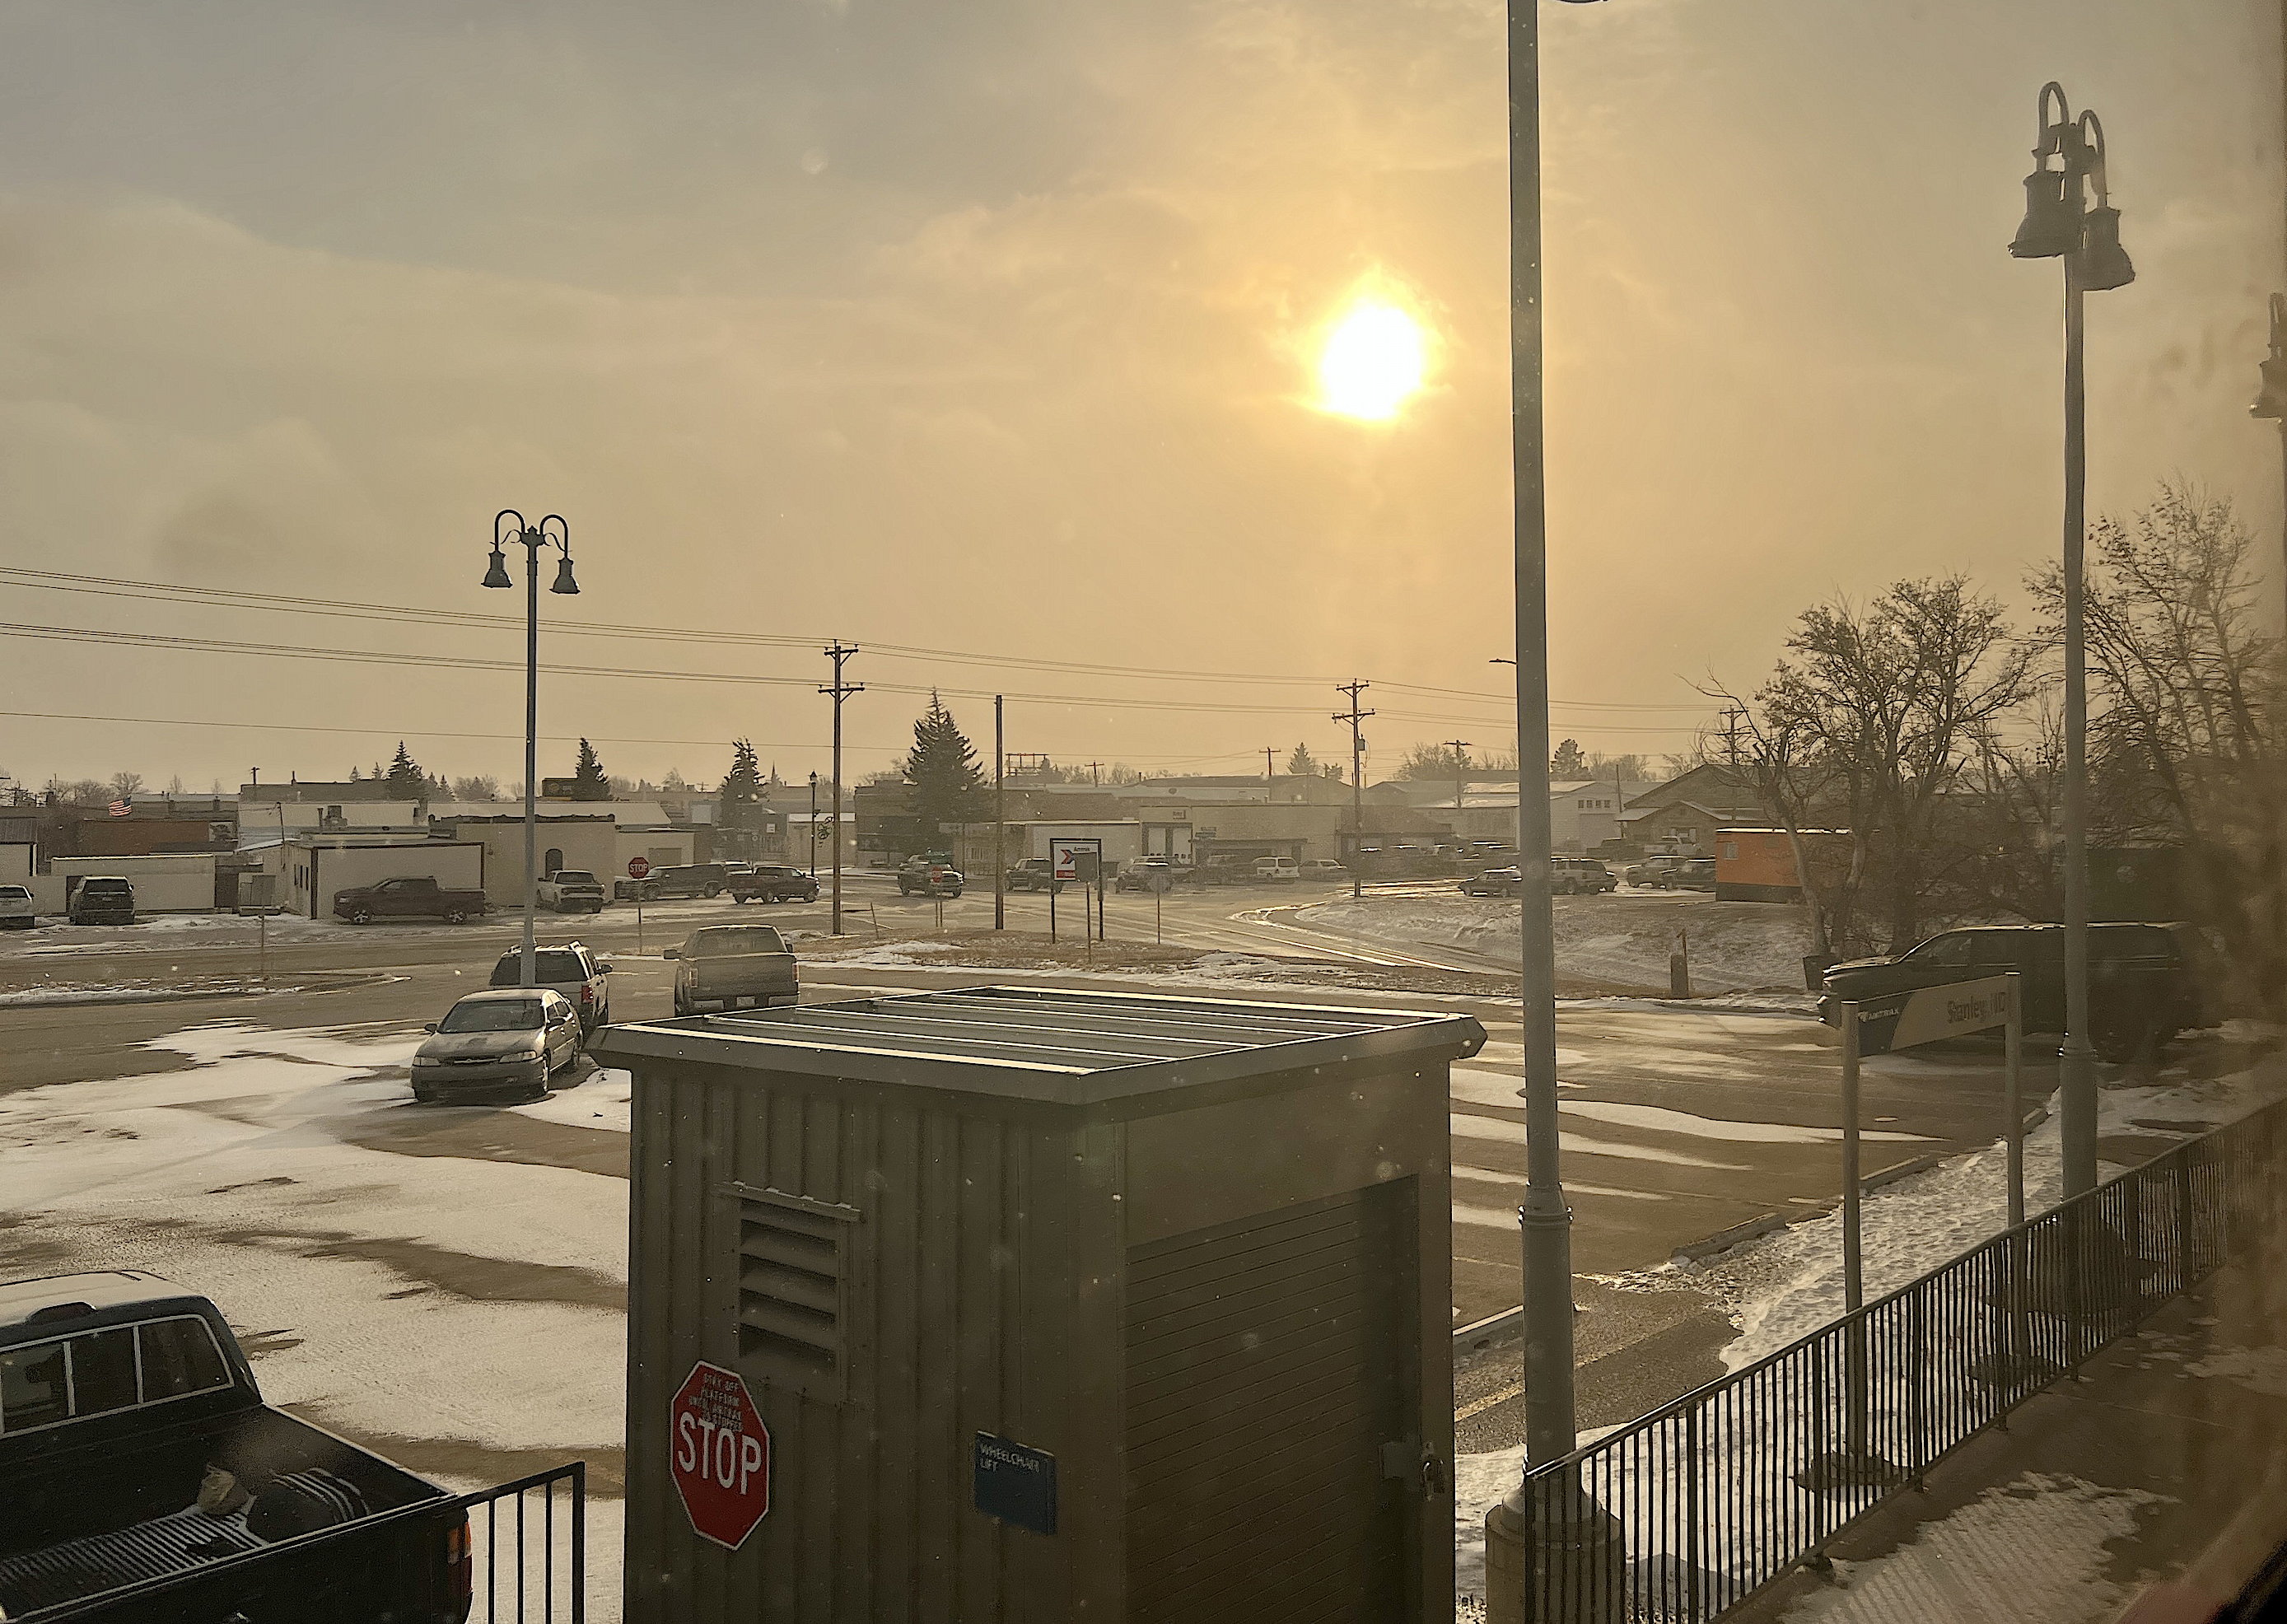 In Stanley, North Dakota, der halbe Bahnsteig ist sichtbar, dahinter die Kurzzeitparkplätze. Der Himmel ist beinahe gelblich, Schneeschauer trüben das Bild